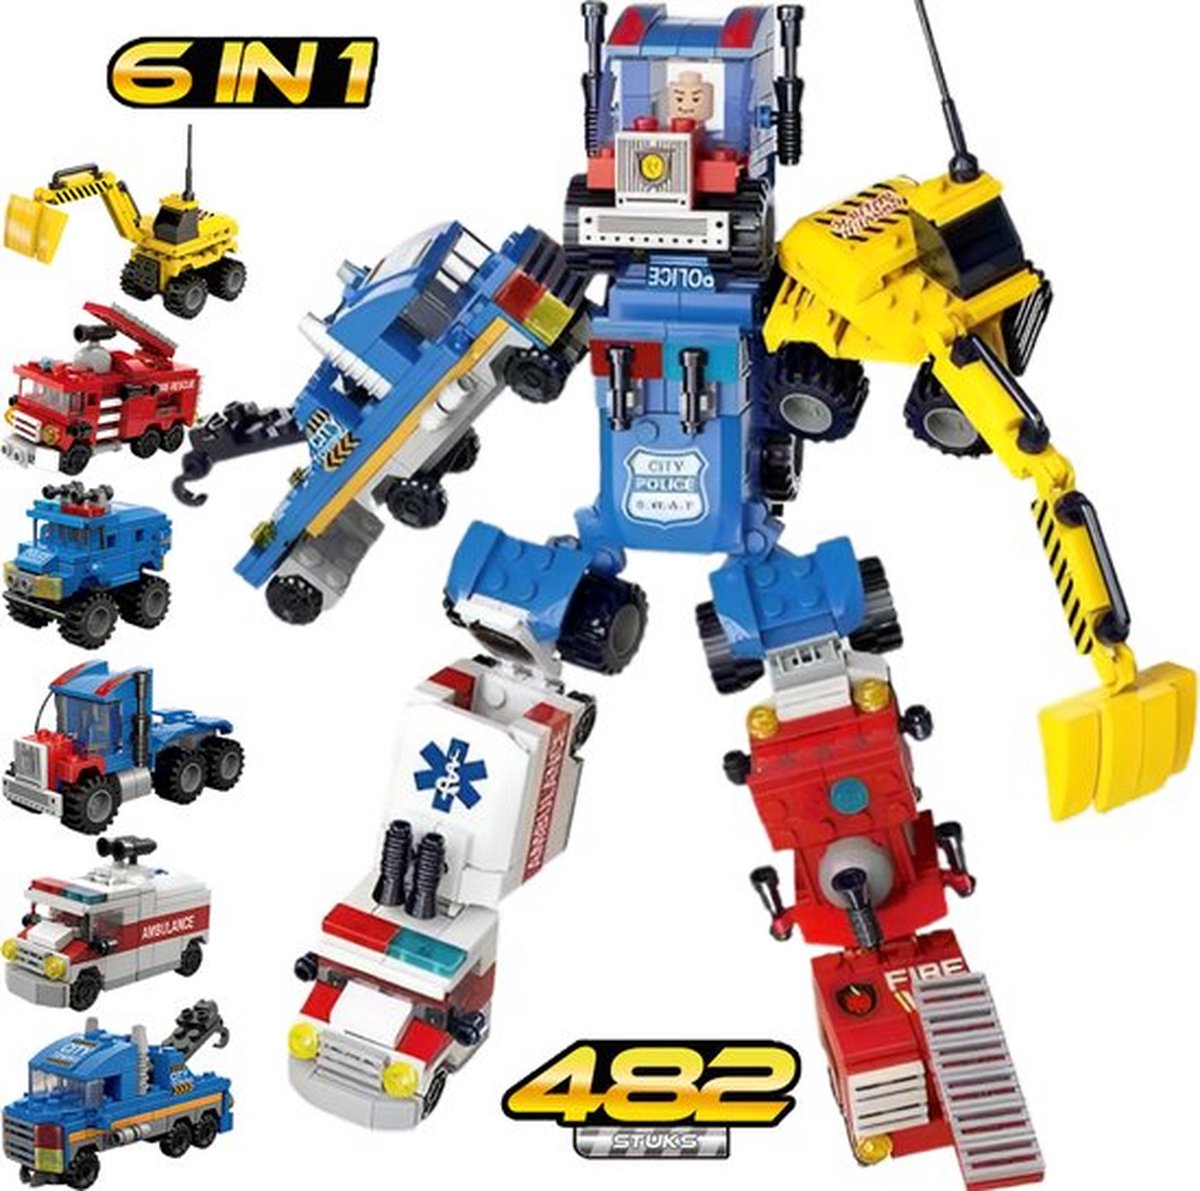 Jouet Transformers voiture de pompier et robot pour enfant